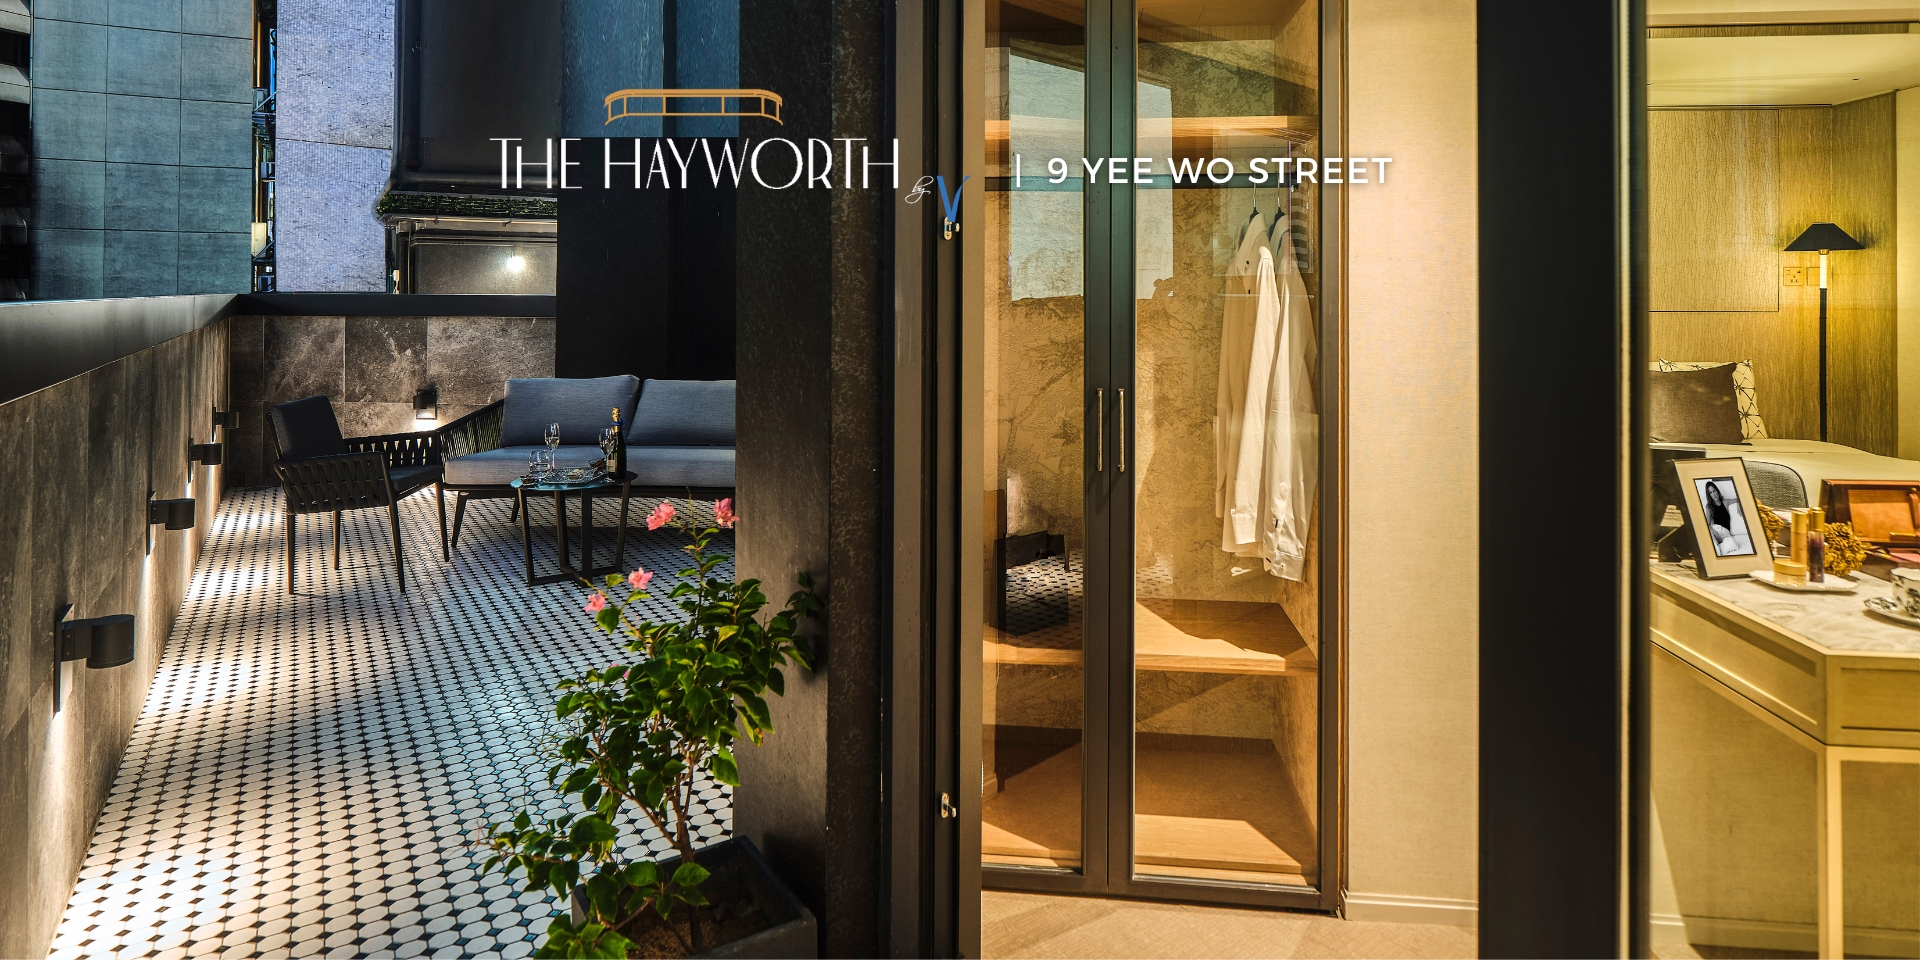 The Hayworth